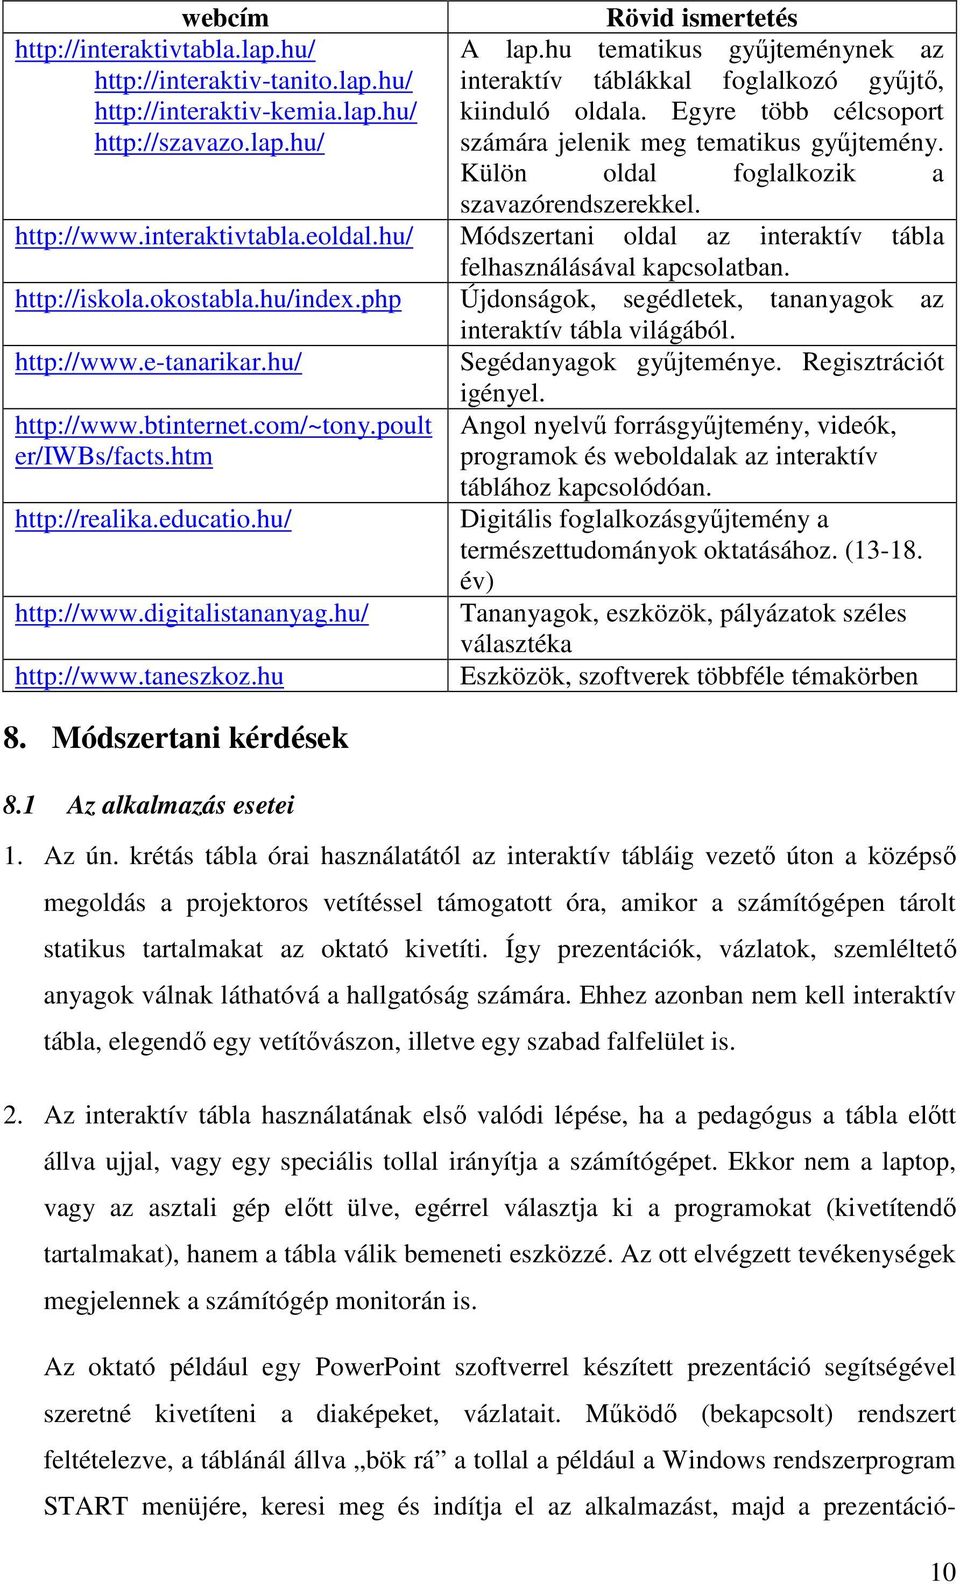 hu/ Módszertani oldal az interaktív tábla felhasználásával kapcsolatban. http://iskola.okostabla.hu/index.php Újdonságok, segédletek, tananyagok az interaktív tábla világából. http://www.e-tanarikar.